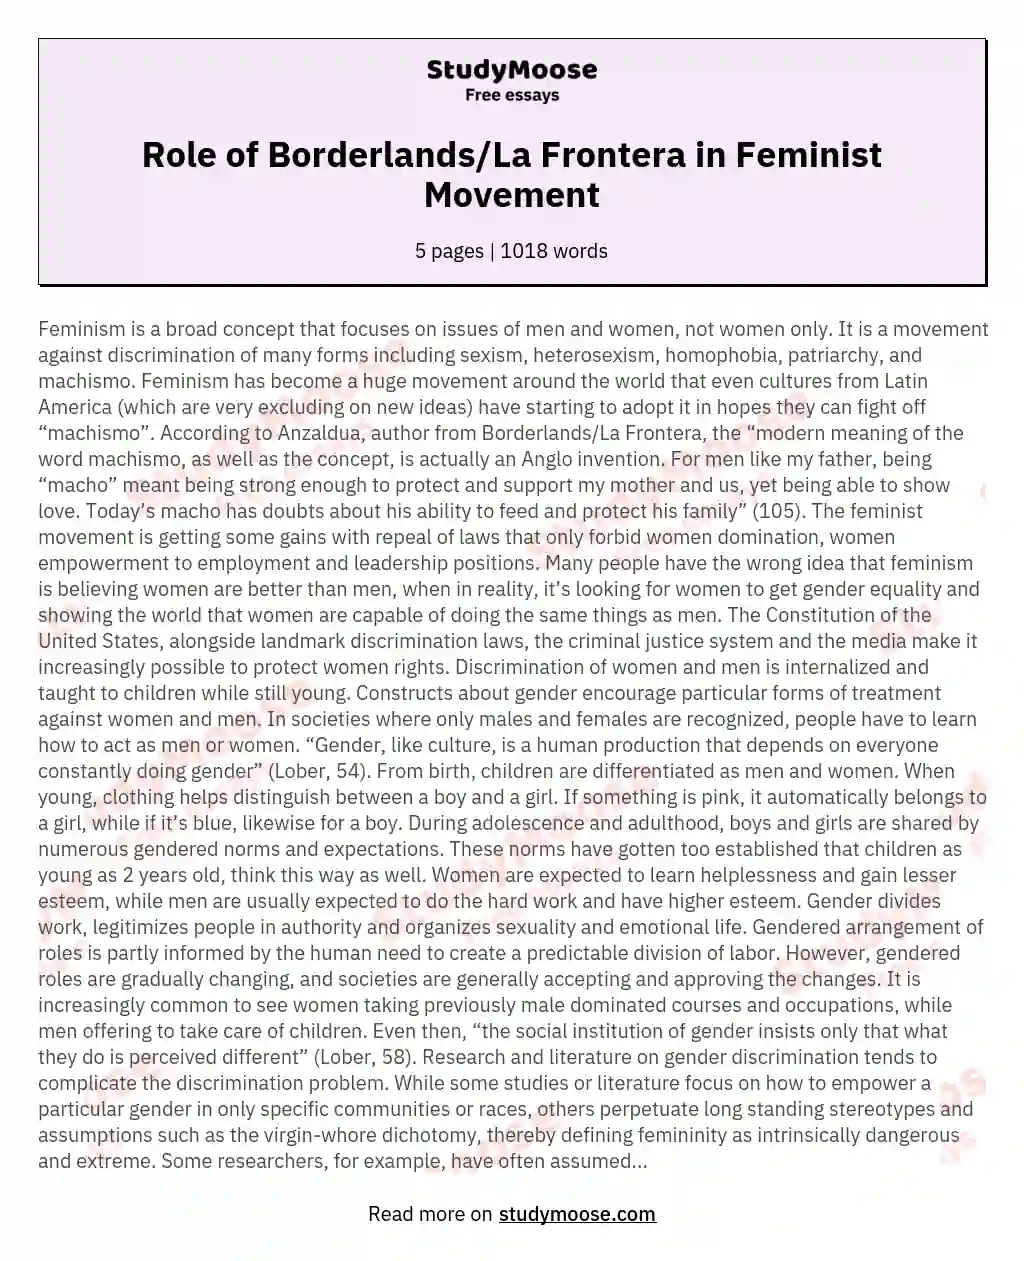 Role of Borderlands/La Frontera in Feminist Movement essay